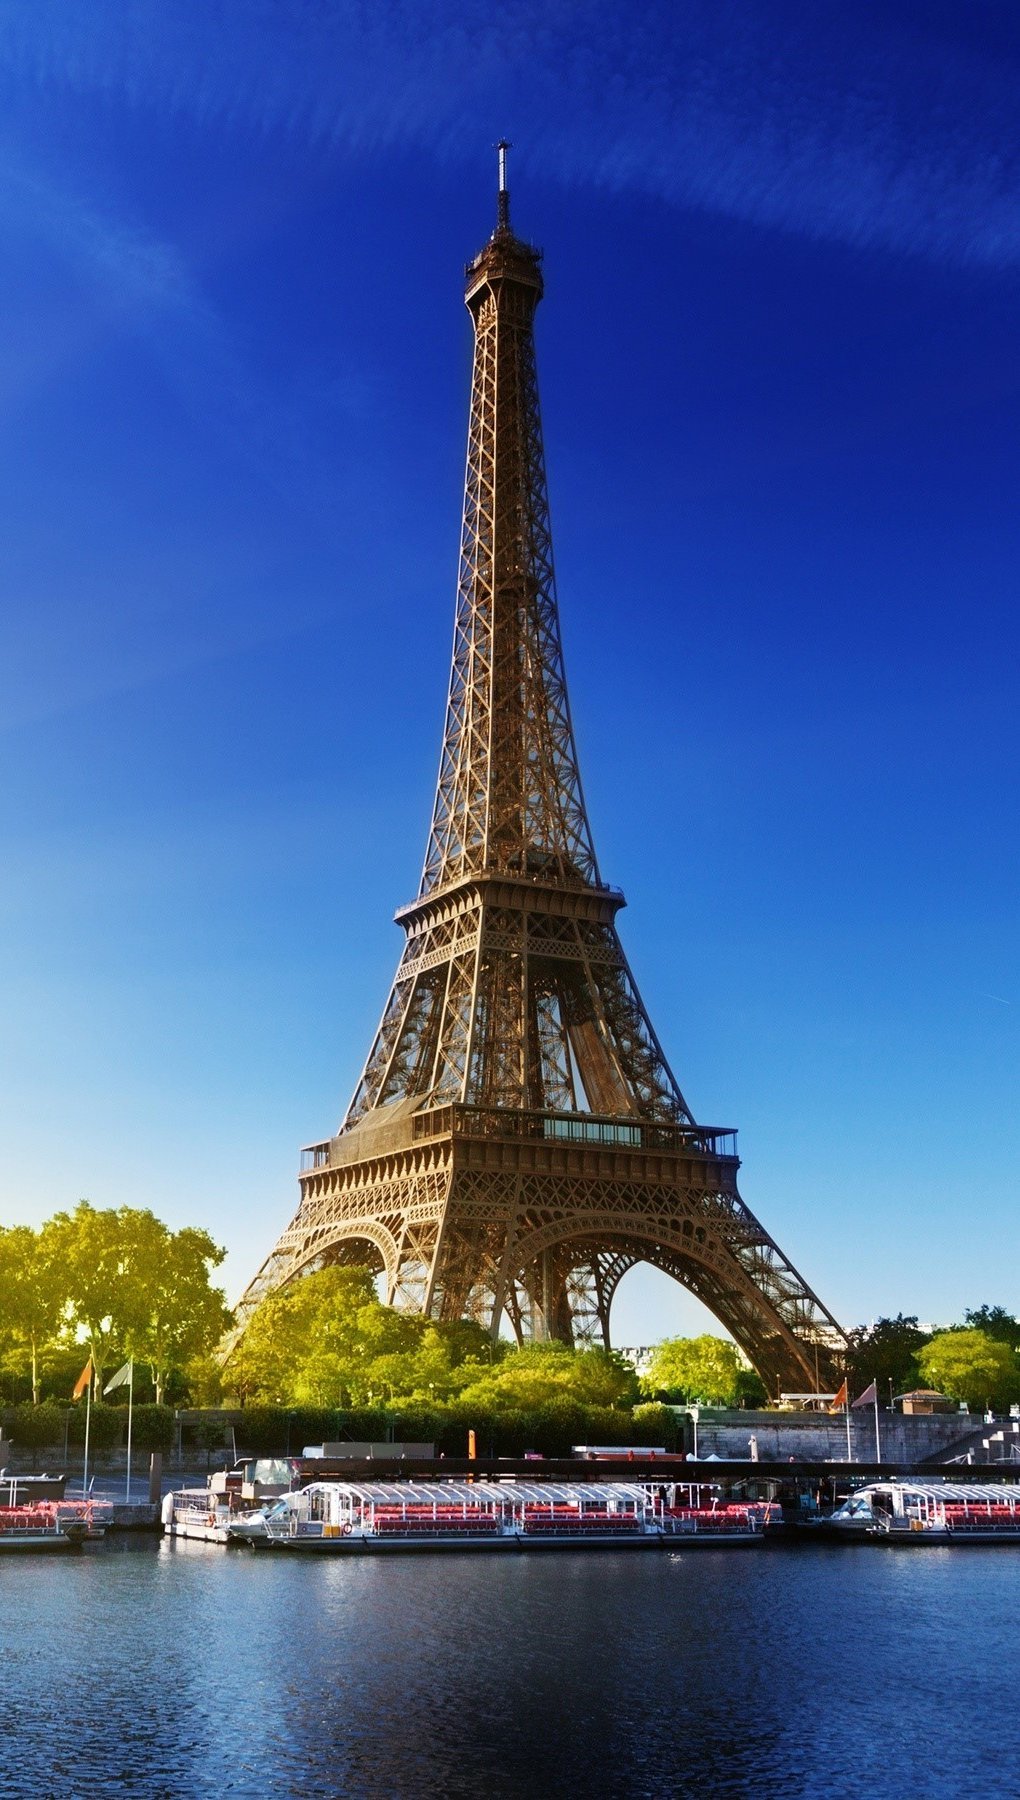 Fondos de pantalla La torre Eiffel y el sol Vertical